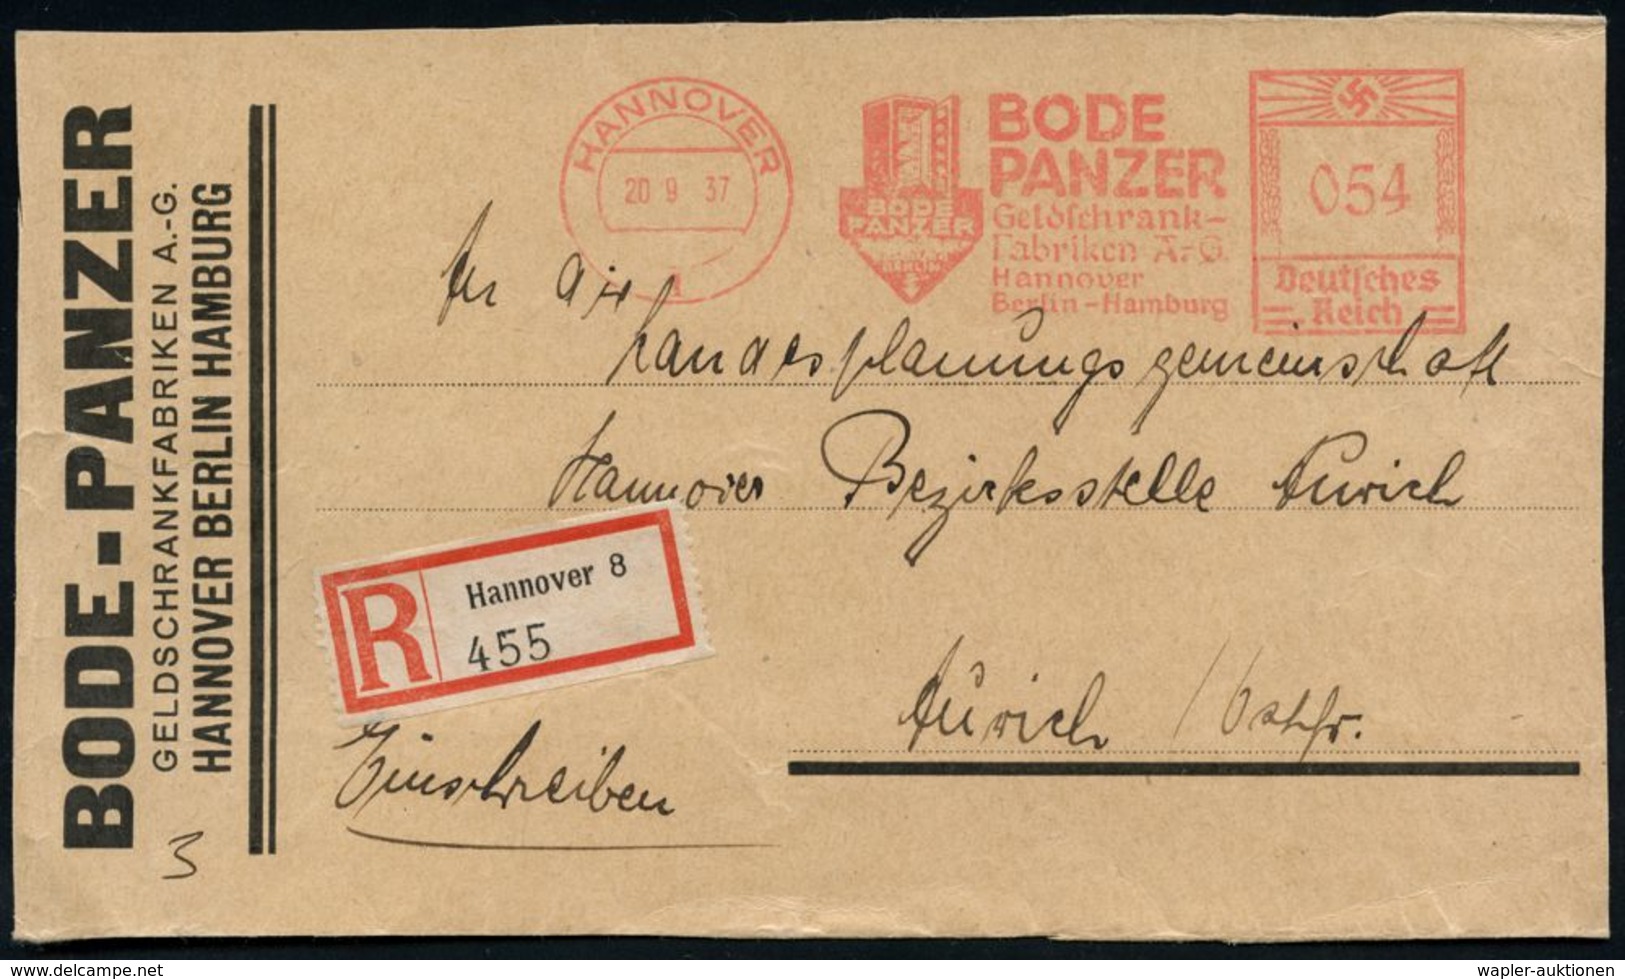 NUMISPHILATELIE / GELDSCHEINE / MÜNZEN : HANNOVER/ 1/ BODE/ PANZER/ Geldschrank-/ Fabriken AG.. 1937 (20.9.) AFS 054 Pf. - Non Classés